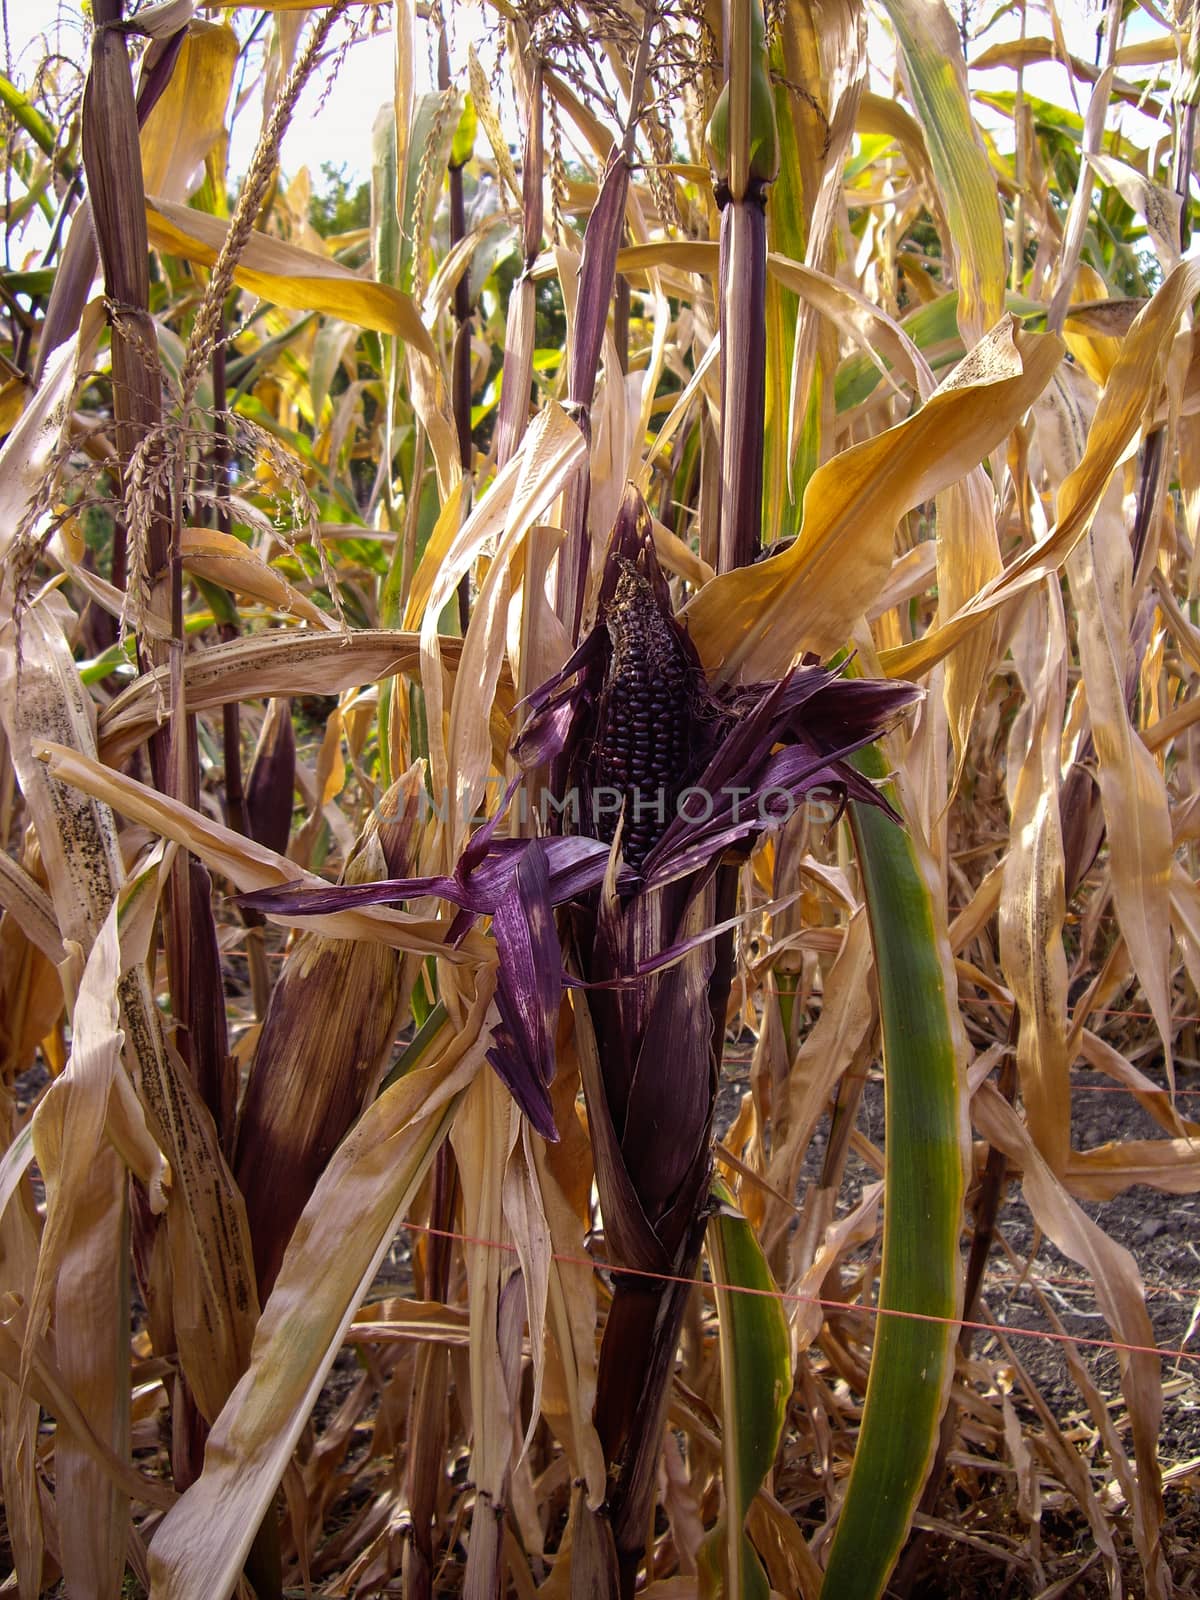 Purple Corn on the Cob in corn field by emattil